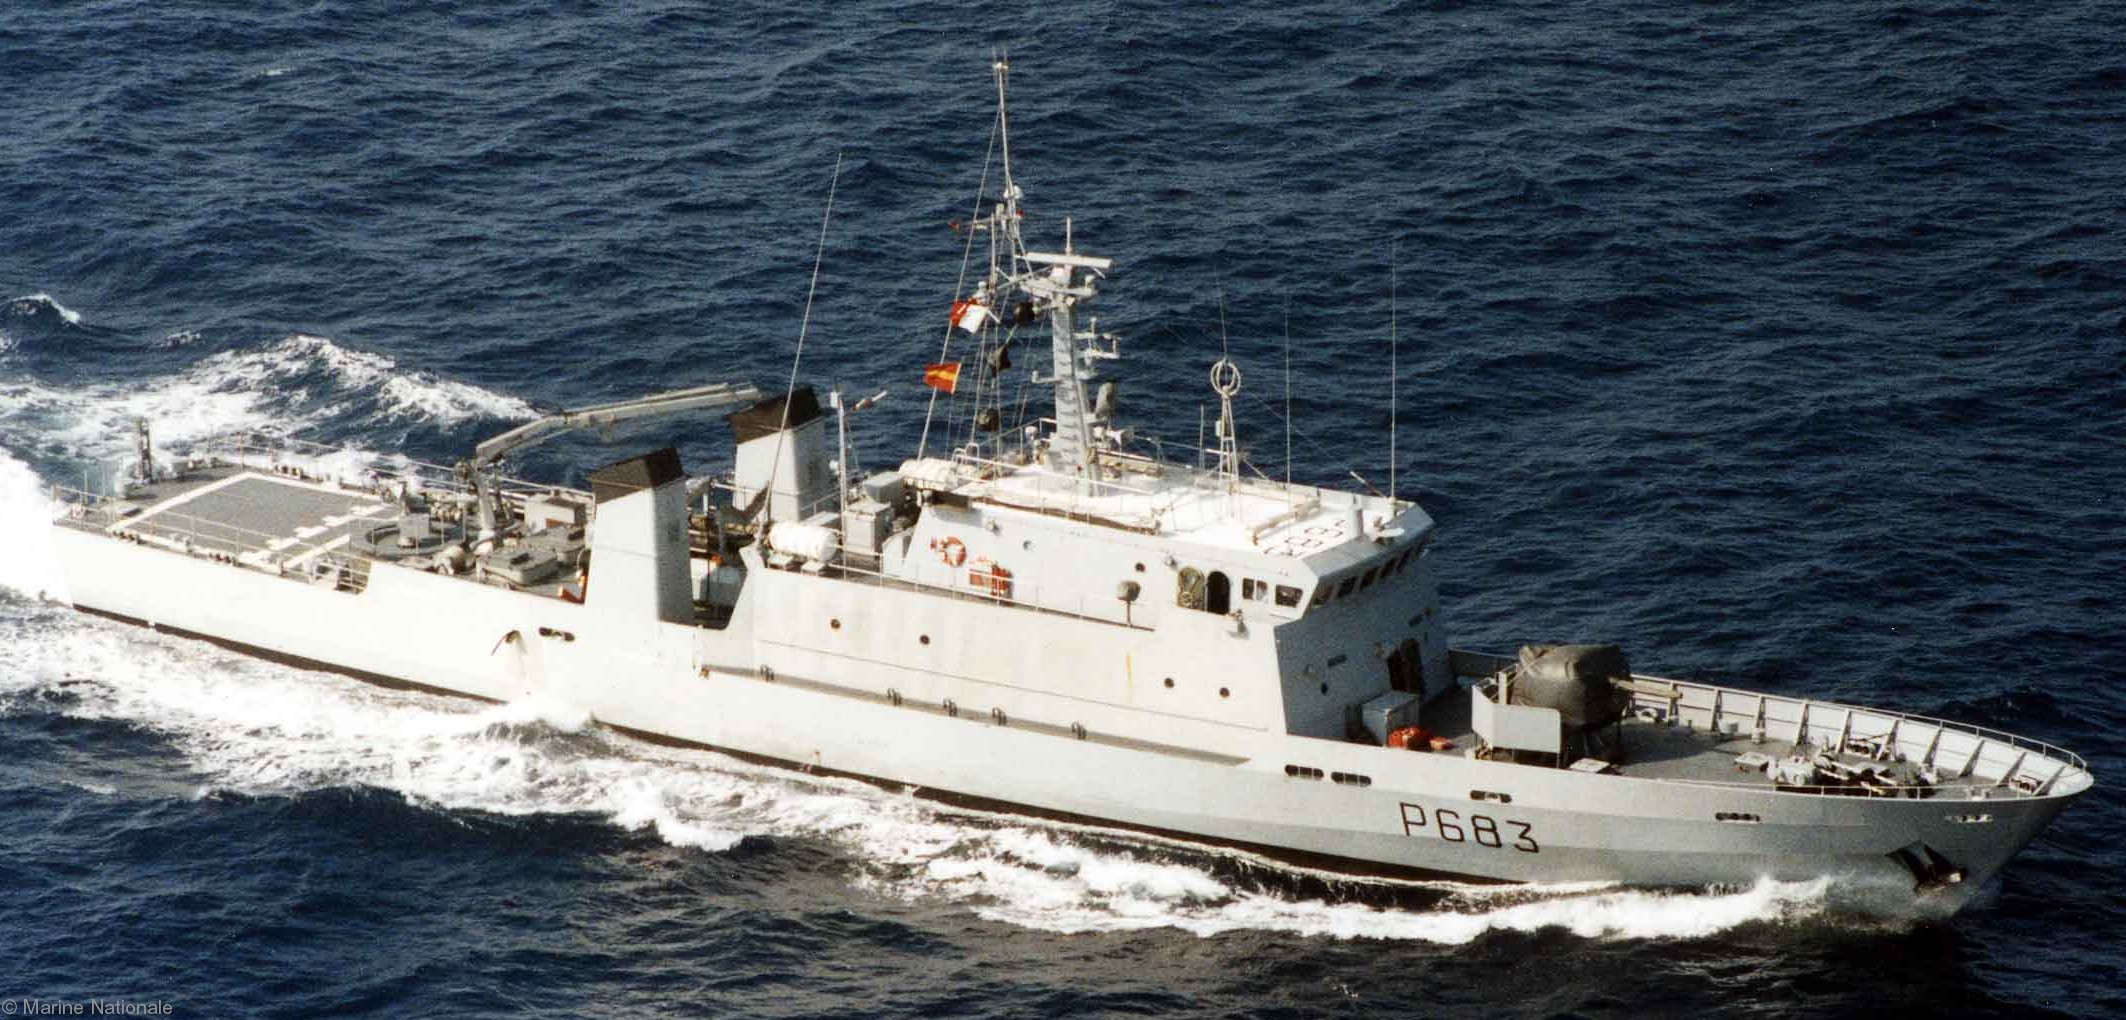 p-683 la boudeuse l'audacieuse p400 class patrol vessel french navy patrouilleur marine nationale 02